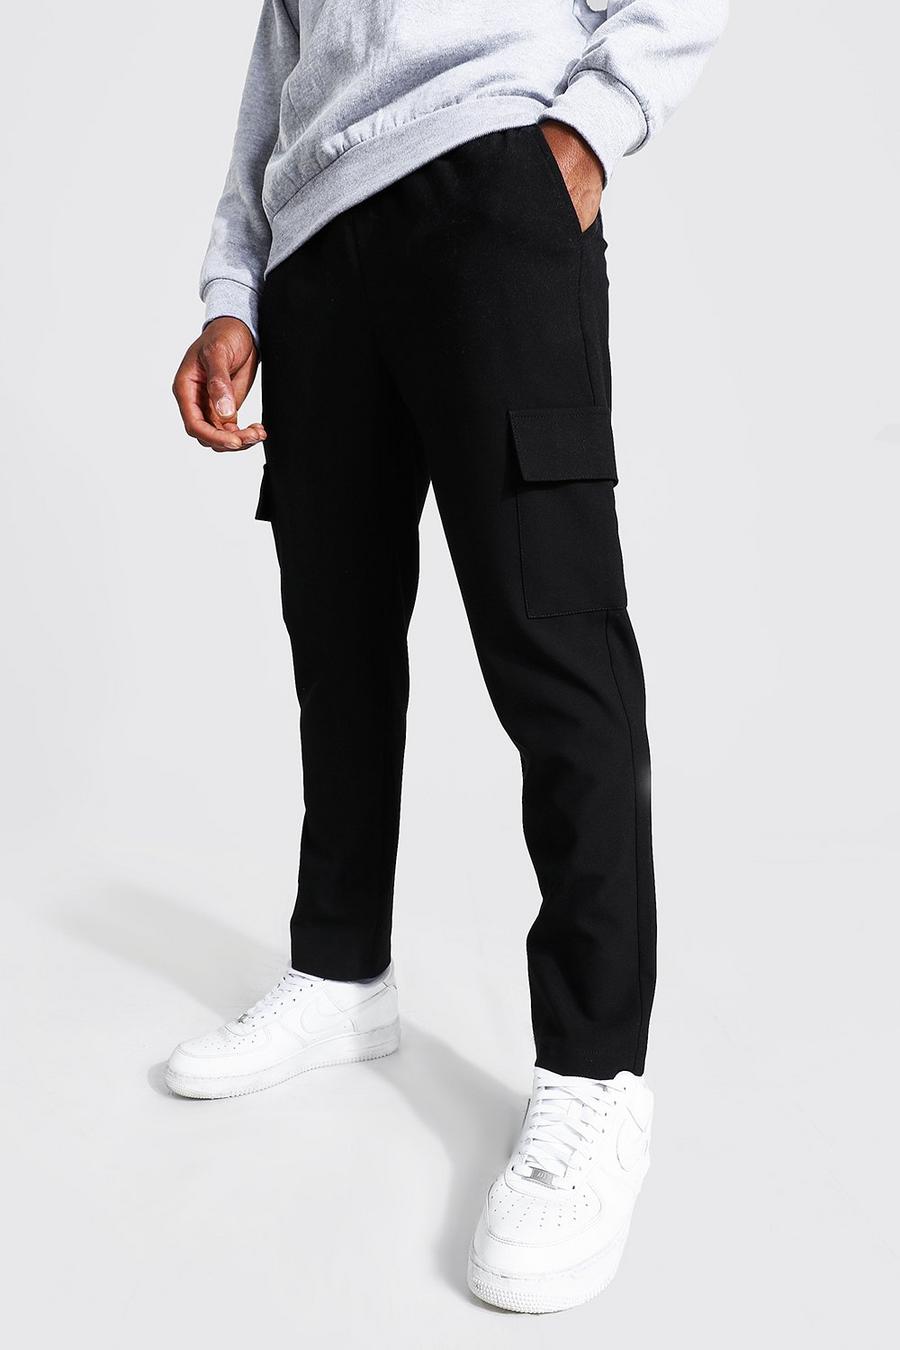 Pantalón deportivo pitillo crop cargo elegante, Negro